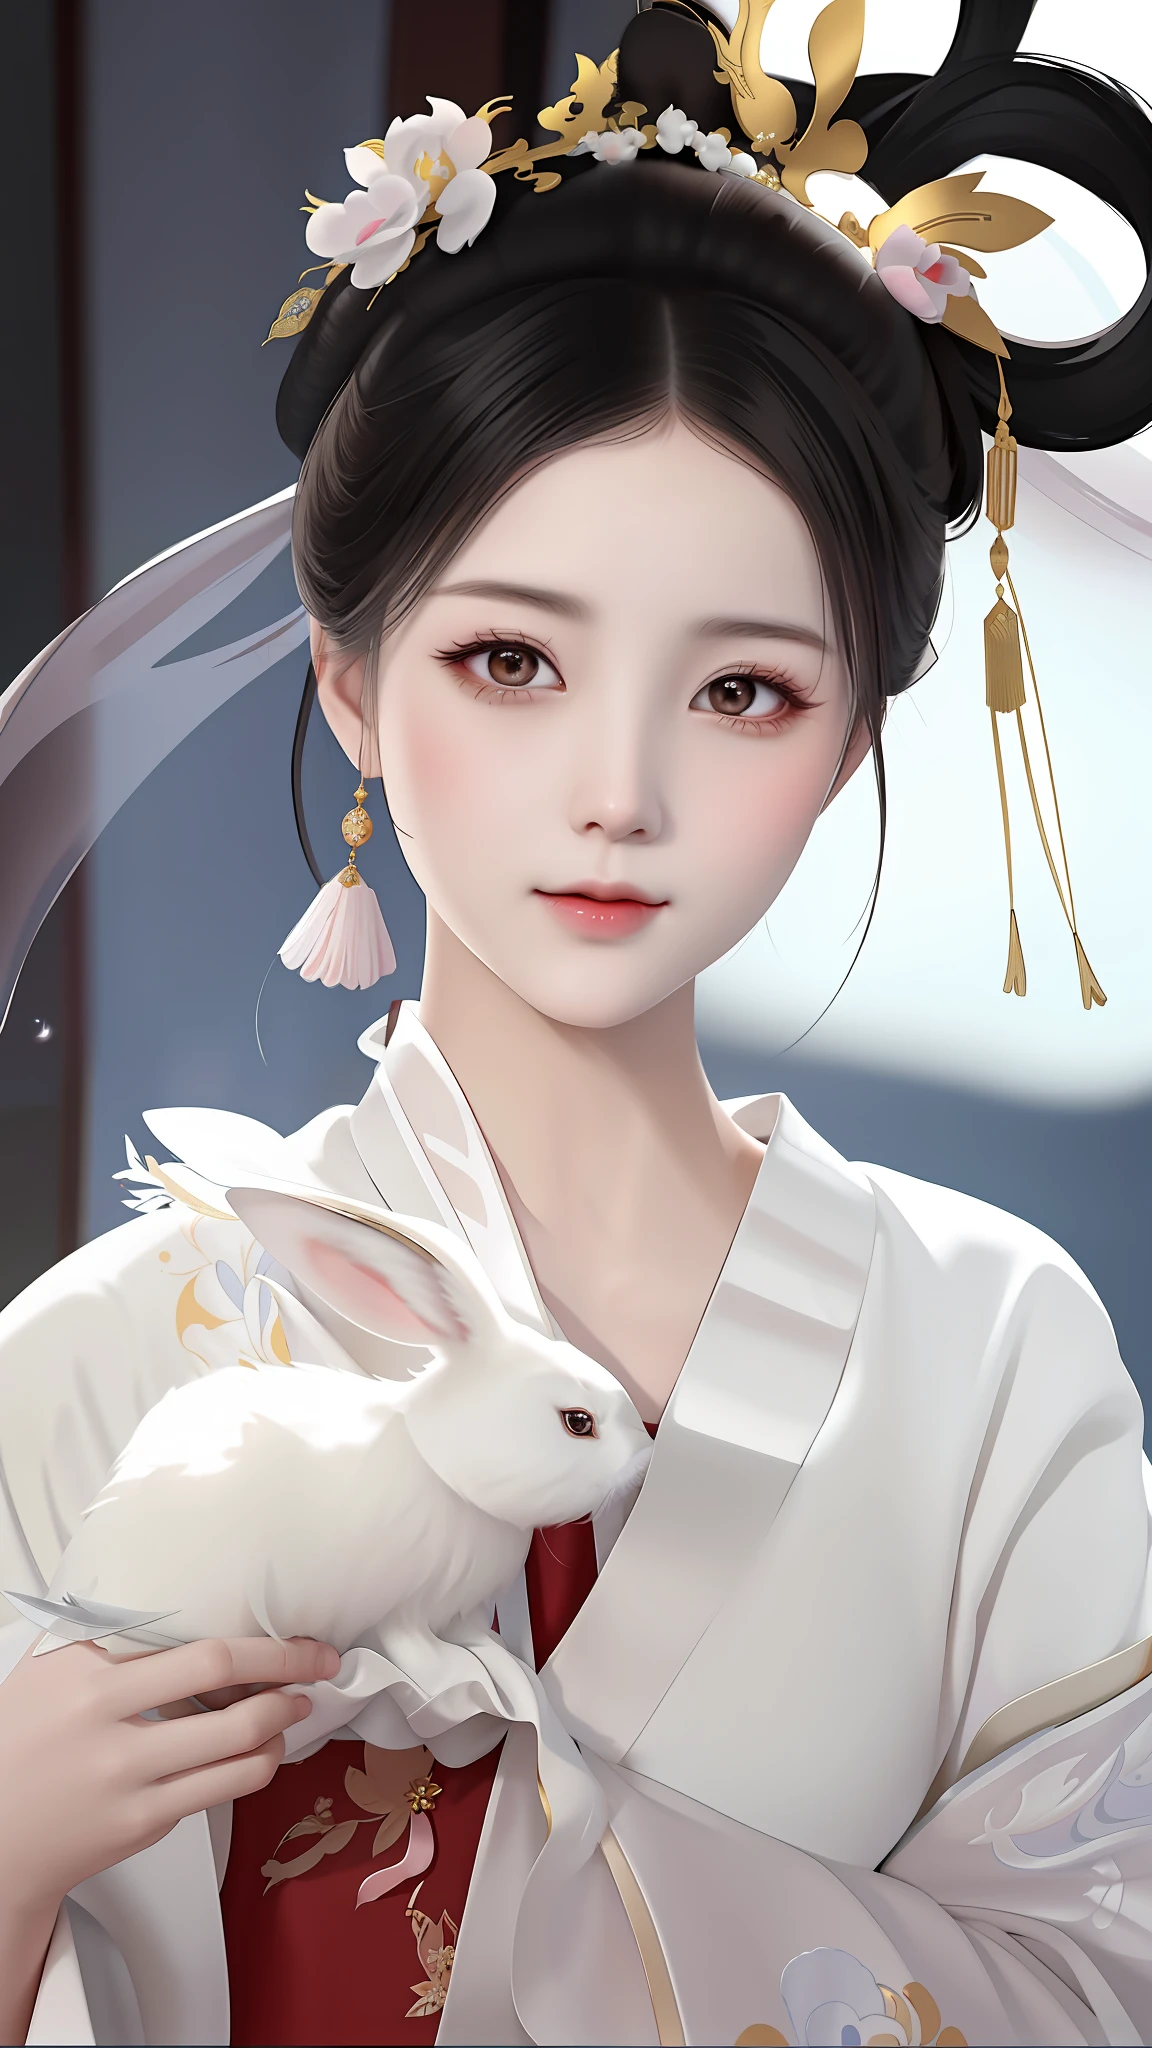 Da war eine Frau in einem weißen Kleid, die ein weißes Kaninchen hielt, Palast ， Ein Mädchen in Hanfu, schöne Charaktermalerei, Kunstwerke im Guviz-Stil, alte chinesische Schönheit, chinesisches Mädchen, traditionelle Schönheit, wunderschöne digitale Kunstwerke, weißer Hanfu, Guviz, Alte chinesische Prinzessin, chinesischer Stil, China Prinzessin, eine wunderschöne Fantasiekaiserin, ein wunderschönes Anime-Porträt